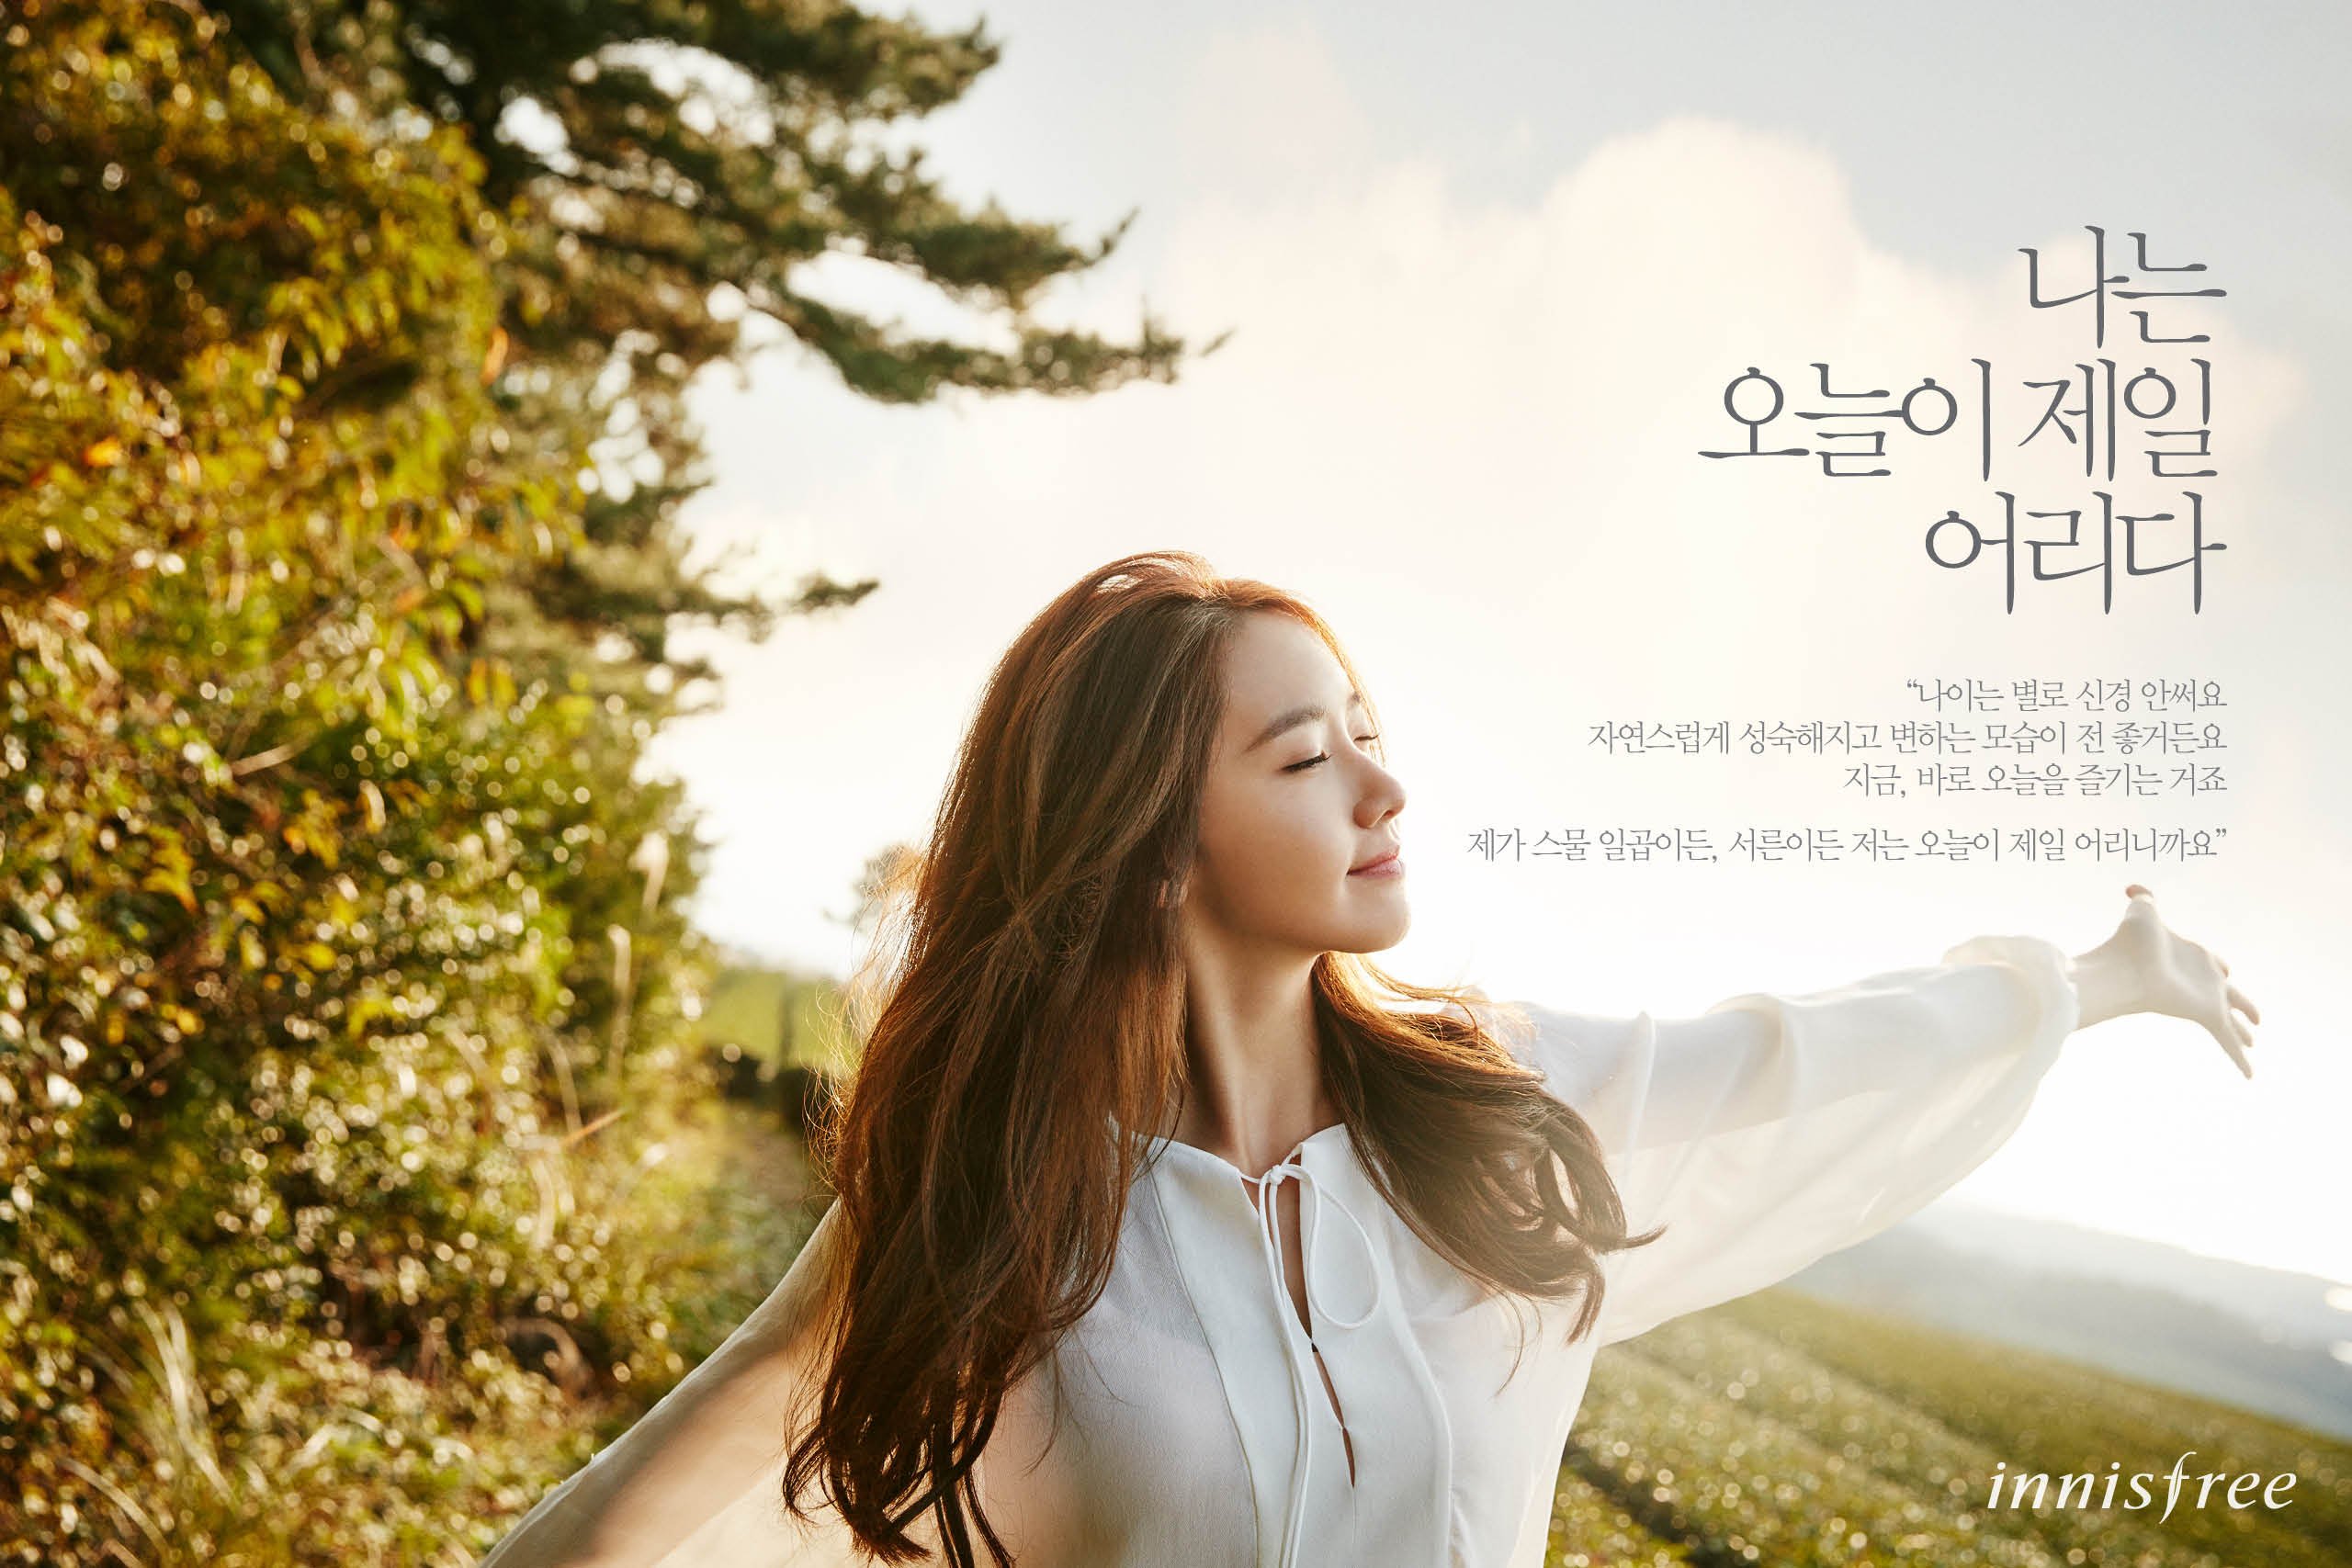 [OTHER][21-07-2012]Hình ảnh mới nhất từ thương hiệu "Innisfree" của YoonA - Page 14 YdWECNNd9e-3000x3000